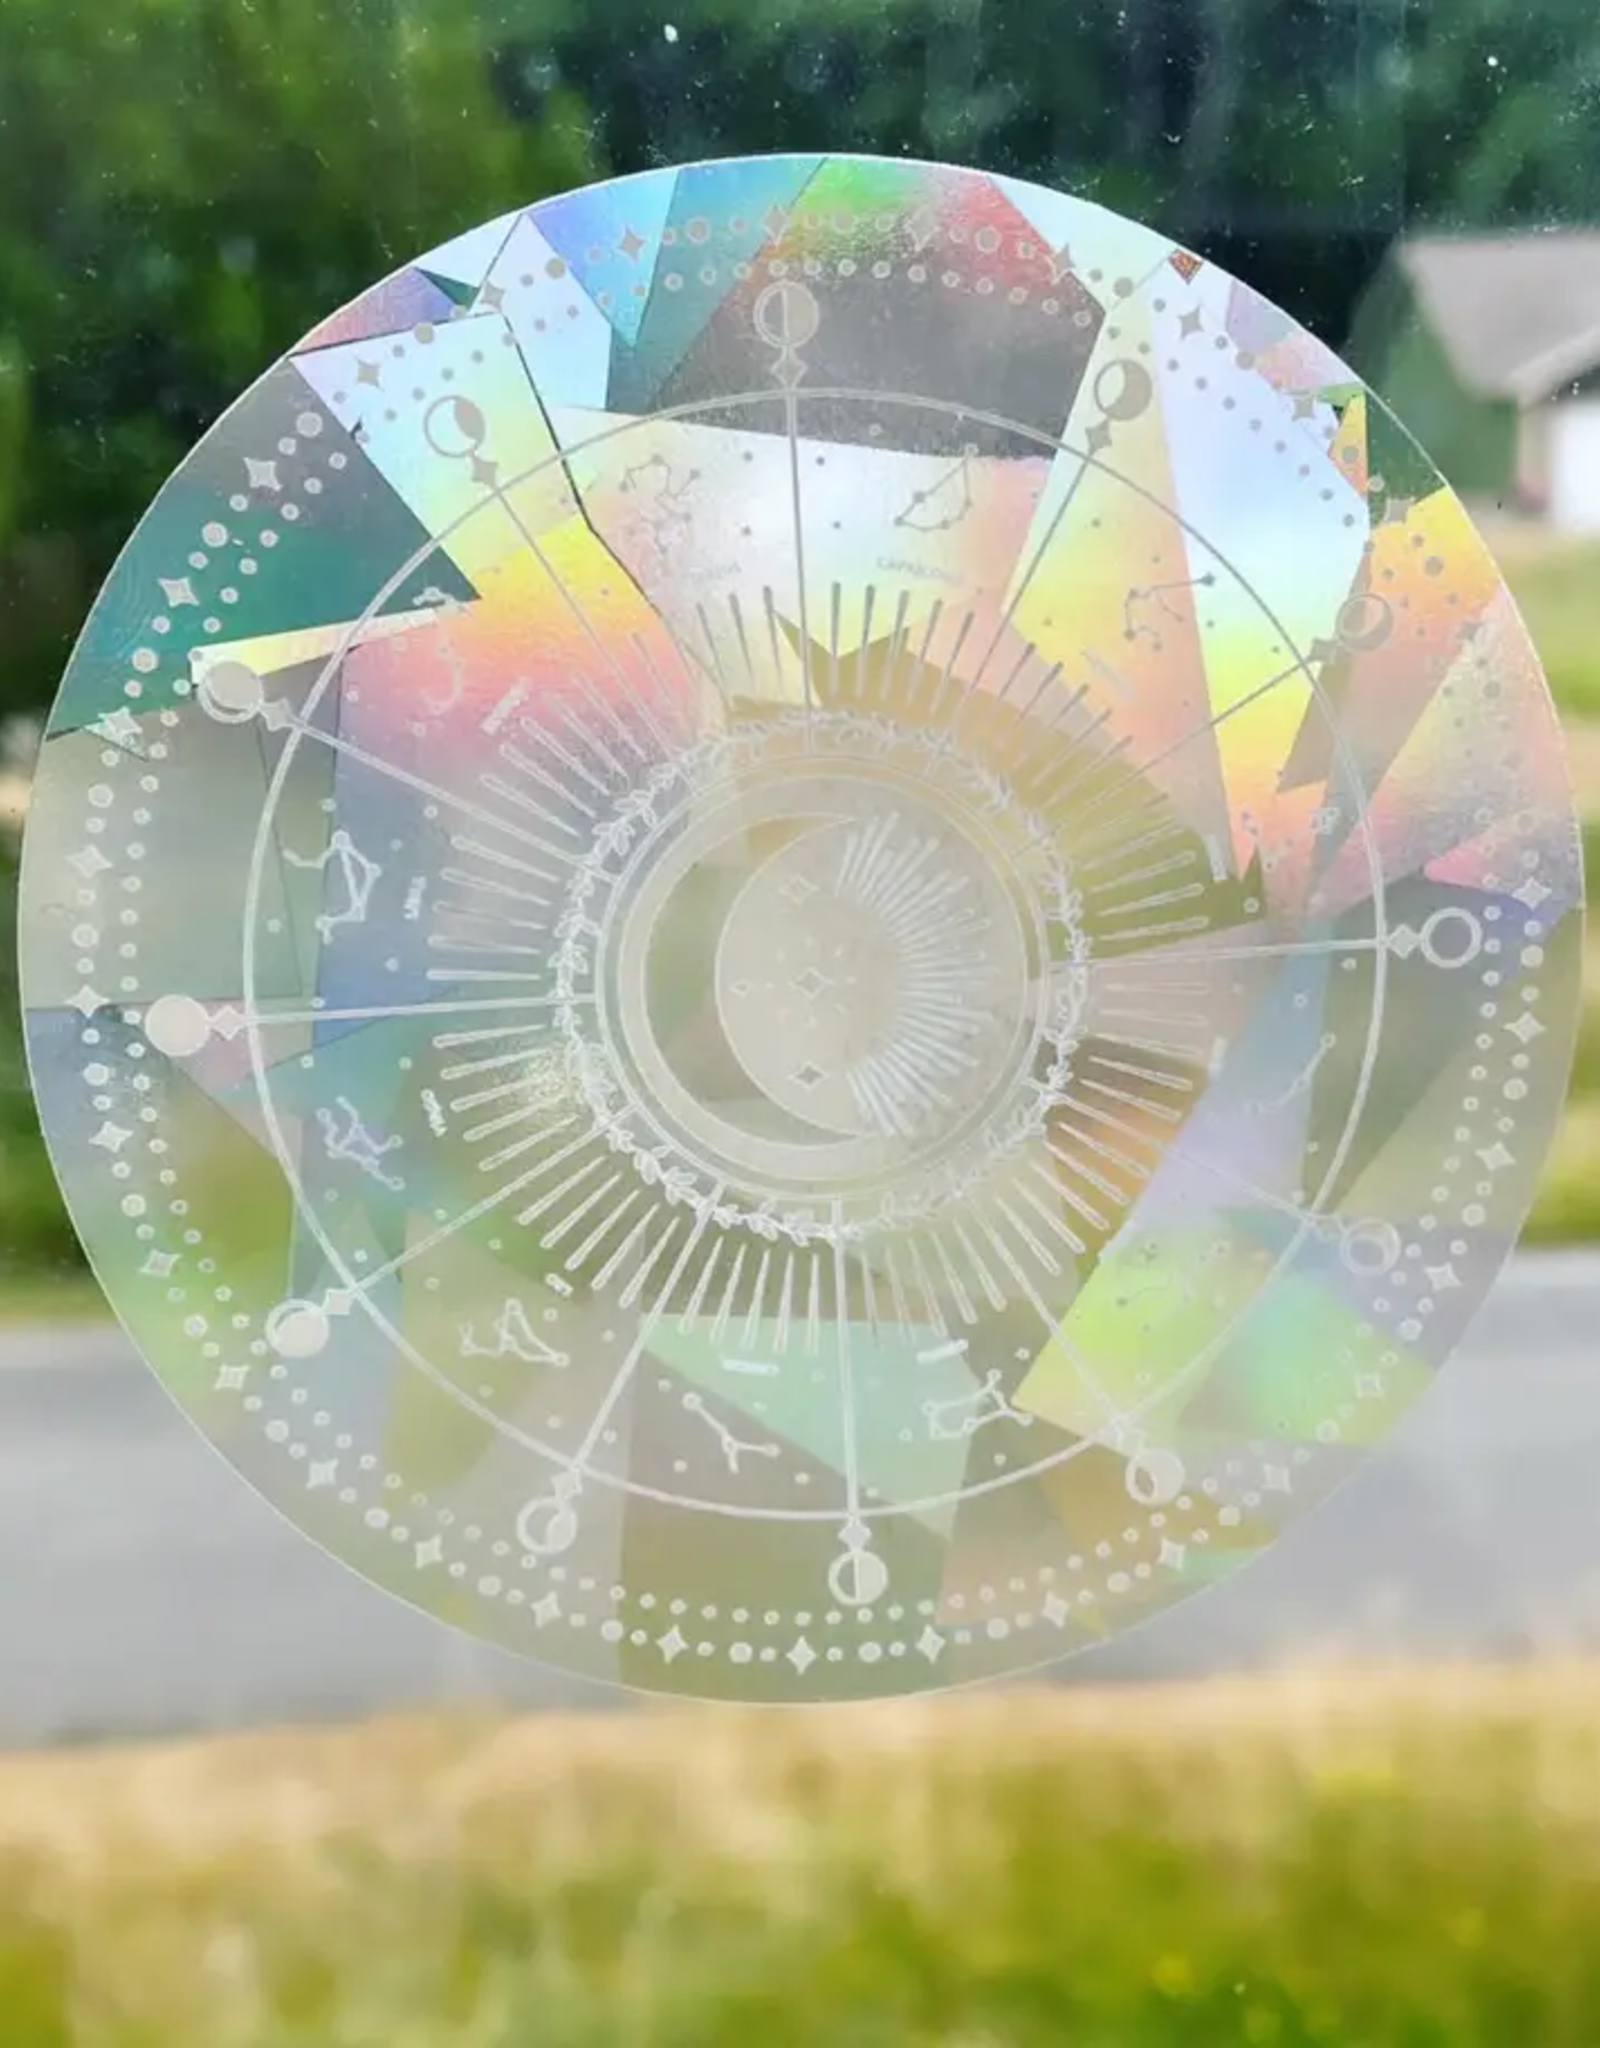 Little Viper Co. Zodiac Astrology Suncatcher Rainbow Maker Sticker Sun Catcher Window Decal